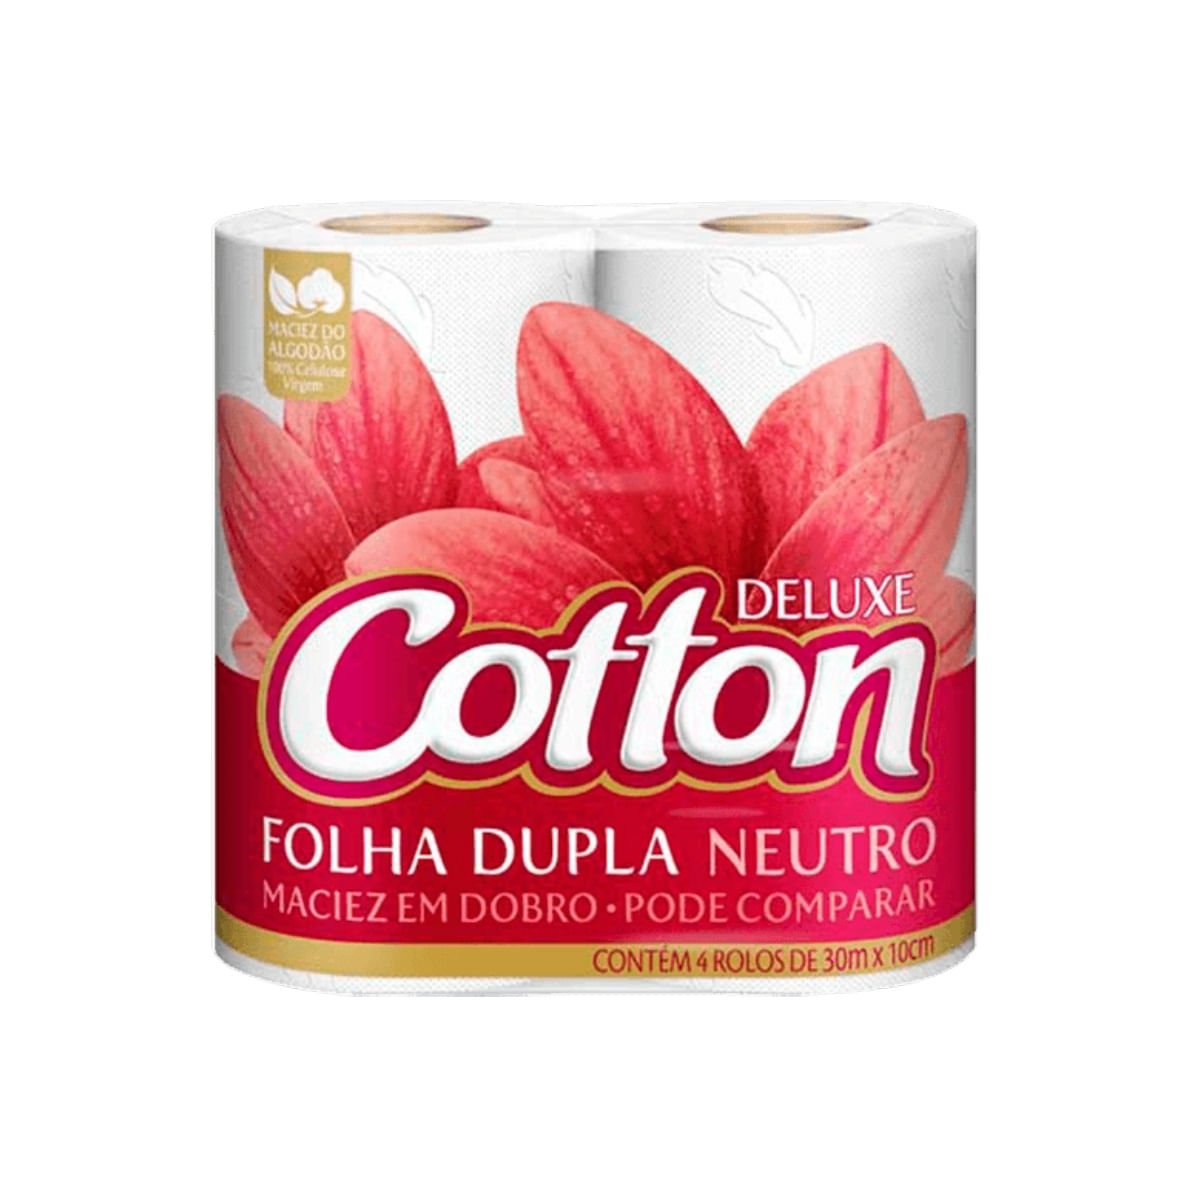 Papel Higienico Cotton Luxe Folha Dupla 30M Compact L12P11